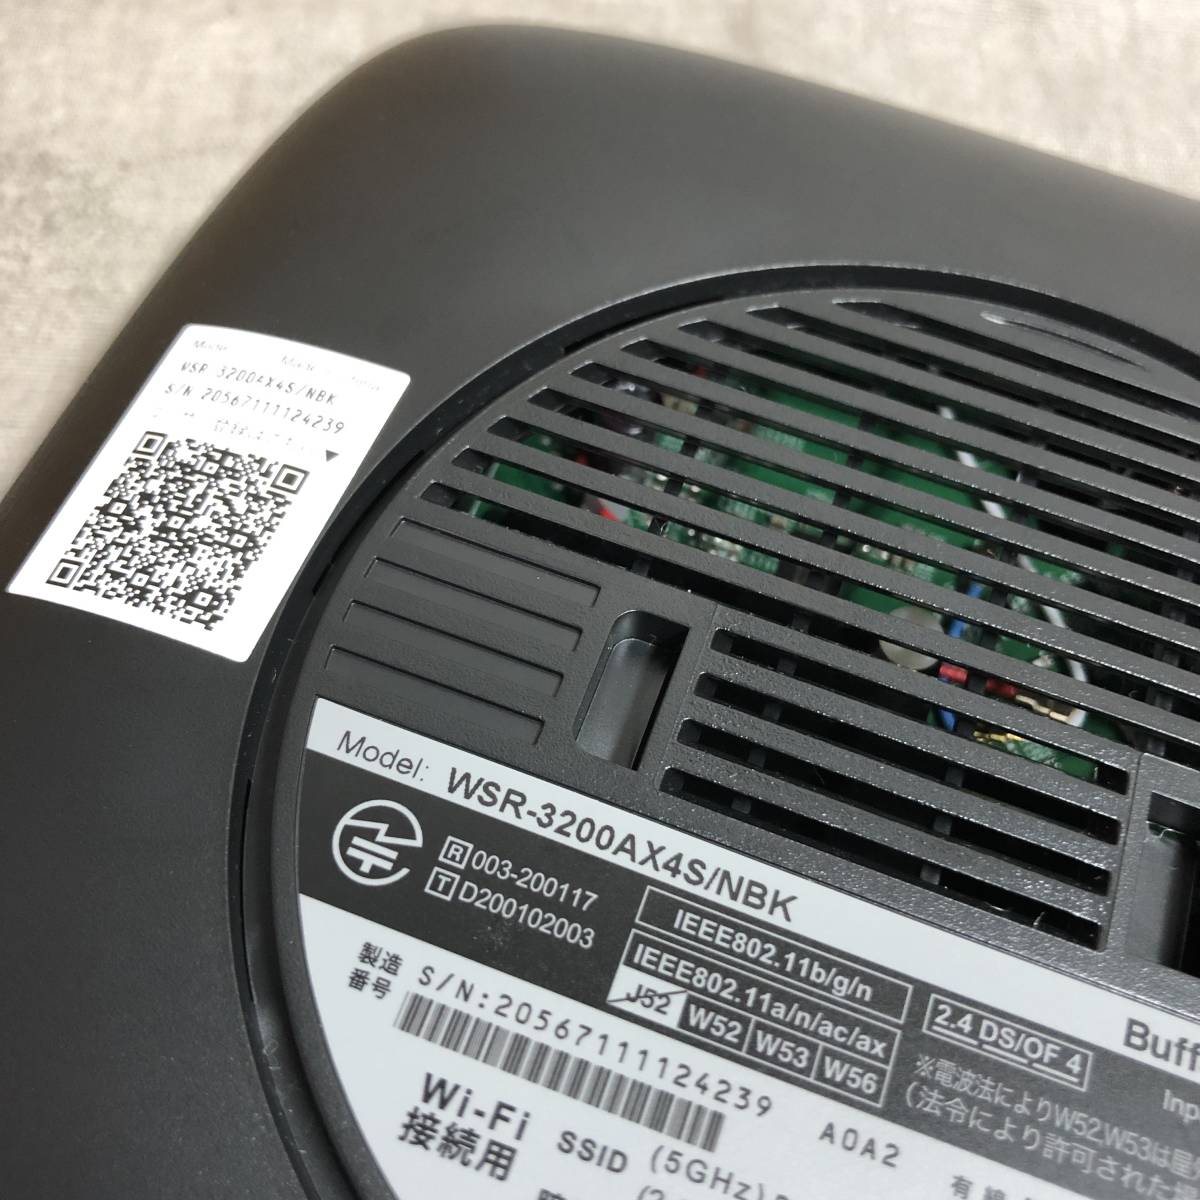 バッファロー WiFi ルーター 無線LAN 最新規格 Wi-Fi6 11ax 11ac AX3200 2401+800Mbps  WSR-3200AX4S/NBK の商品詳細 日本・アメリカのオークション・通販ショッピングの代理入札・購入お得な情報をお届け One Map  by FROM JAPAN|日本代理購入